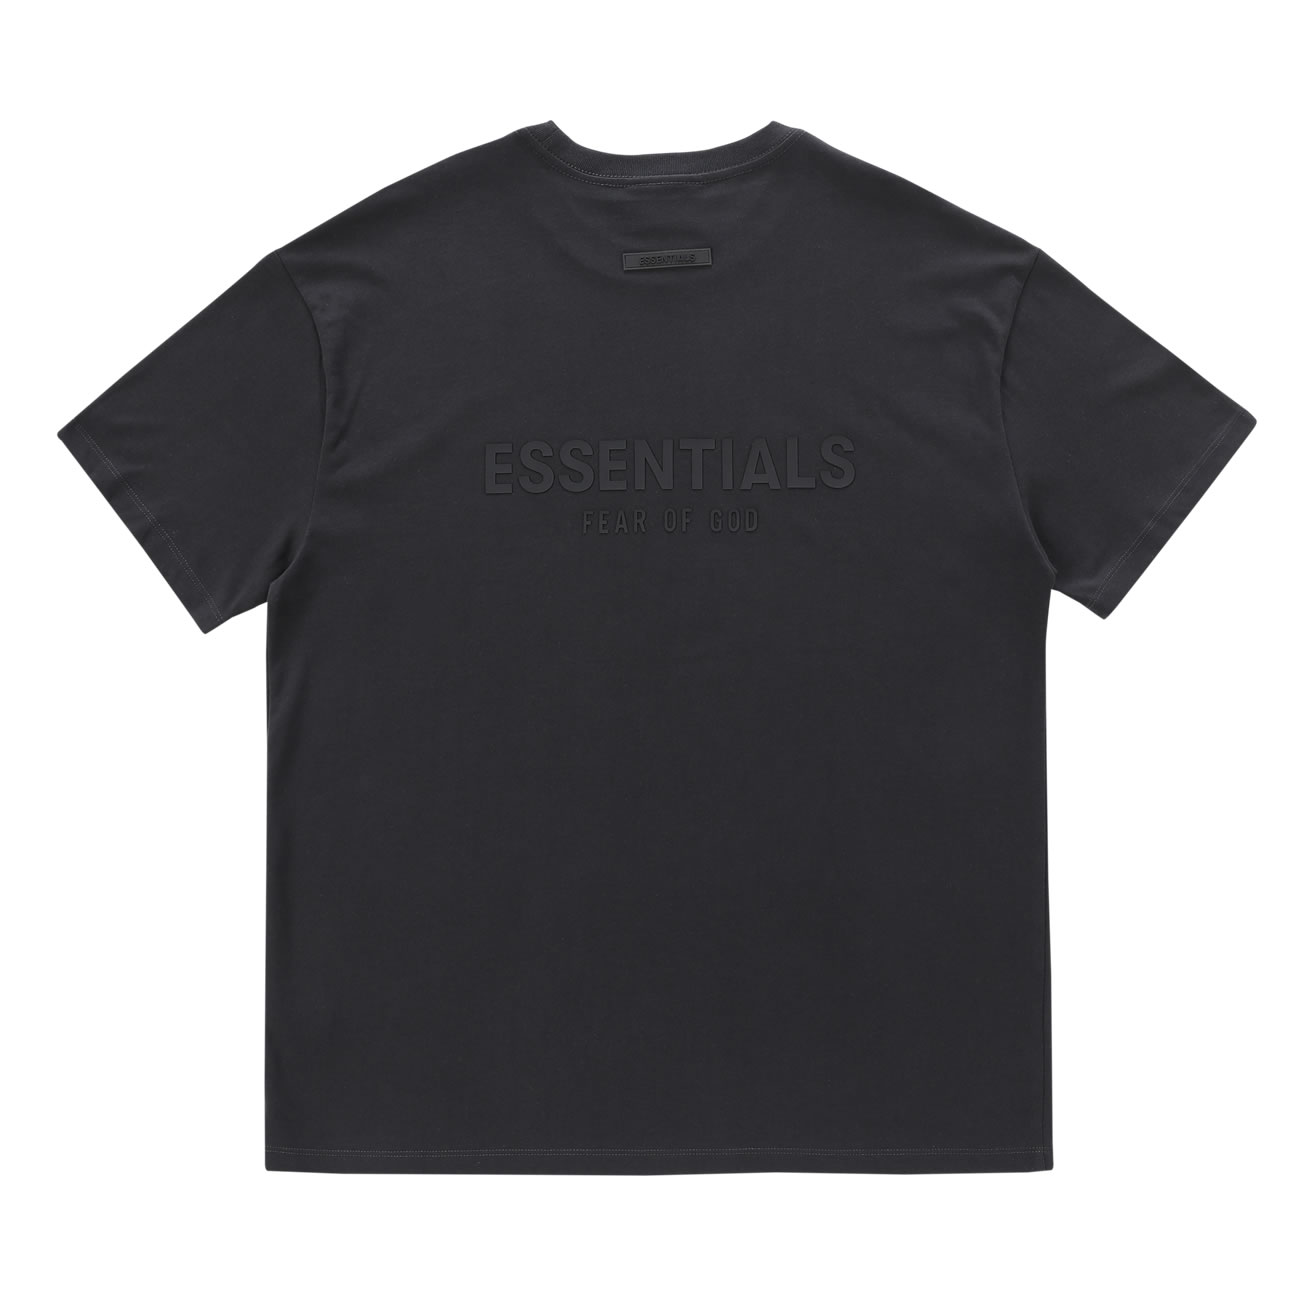 Fear Of God Essentials T Shirt Cream Buttercream Ss21 (4) - newkick.org